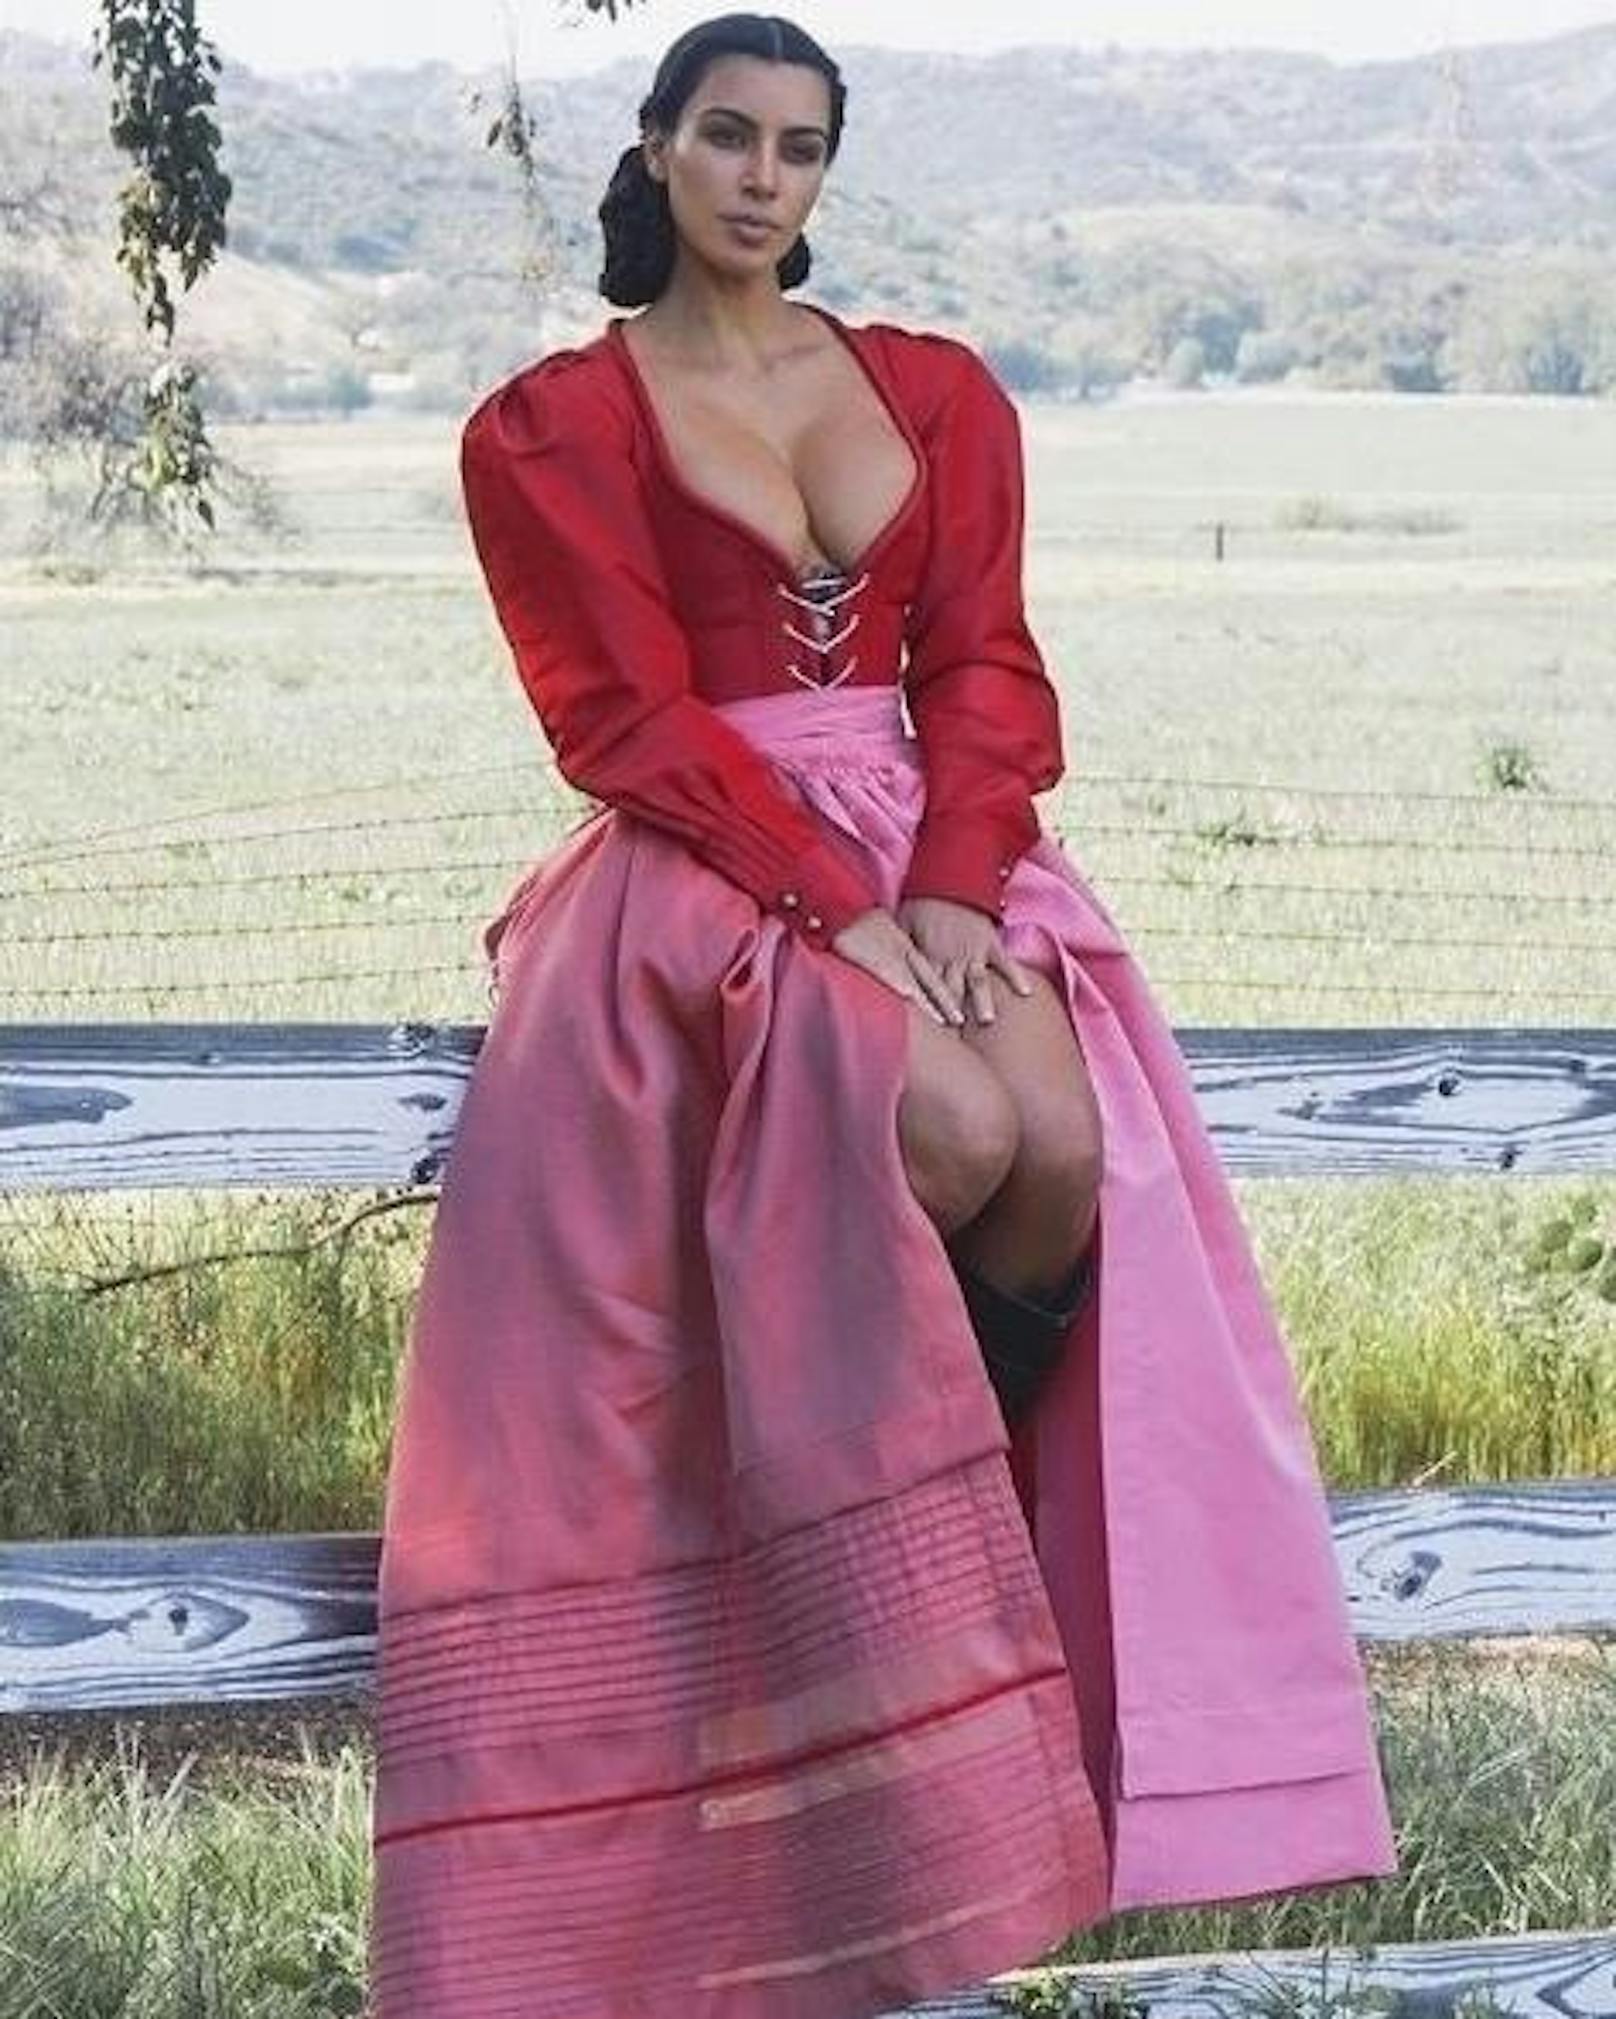 16.09.2018: Kim Kardashian zeigt sich auf Instagram in einem Dirndl mit knallroter, recht ausladender Bluse sowie rosafarbenem Rock. So wartet sie auf die neue Staffel der TV-Sendung "The Handmaids Tale".